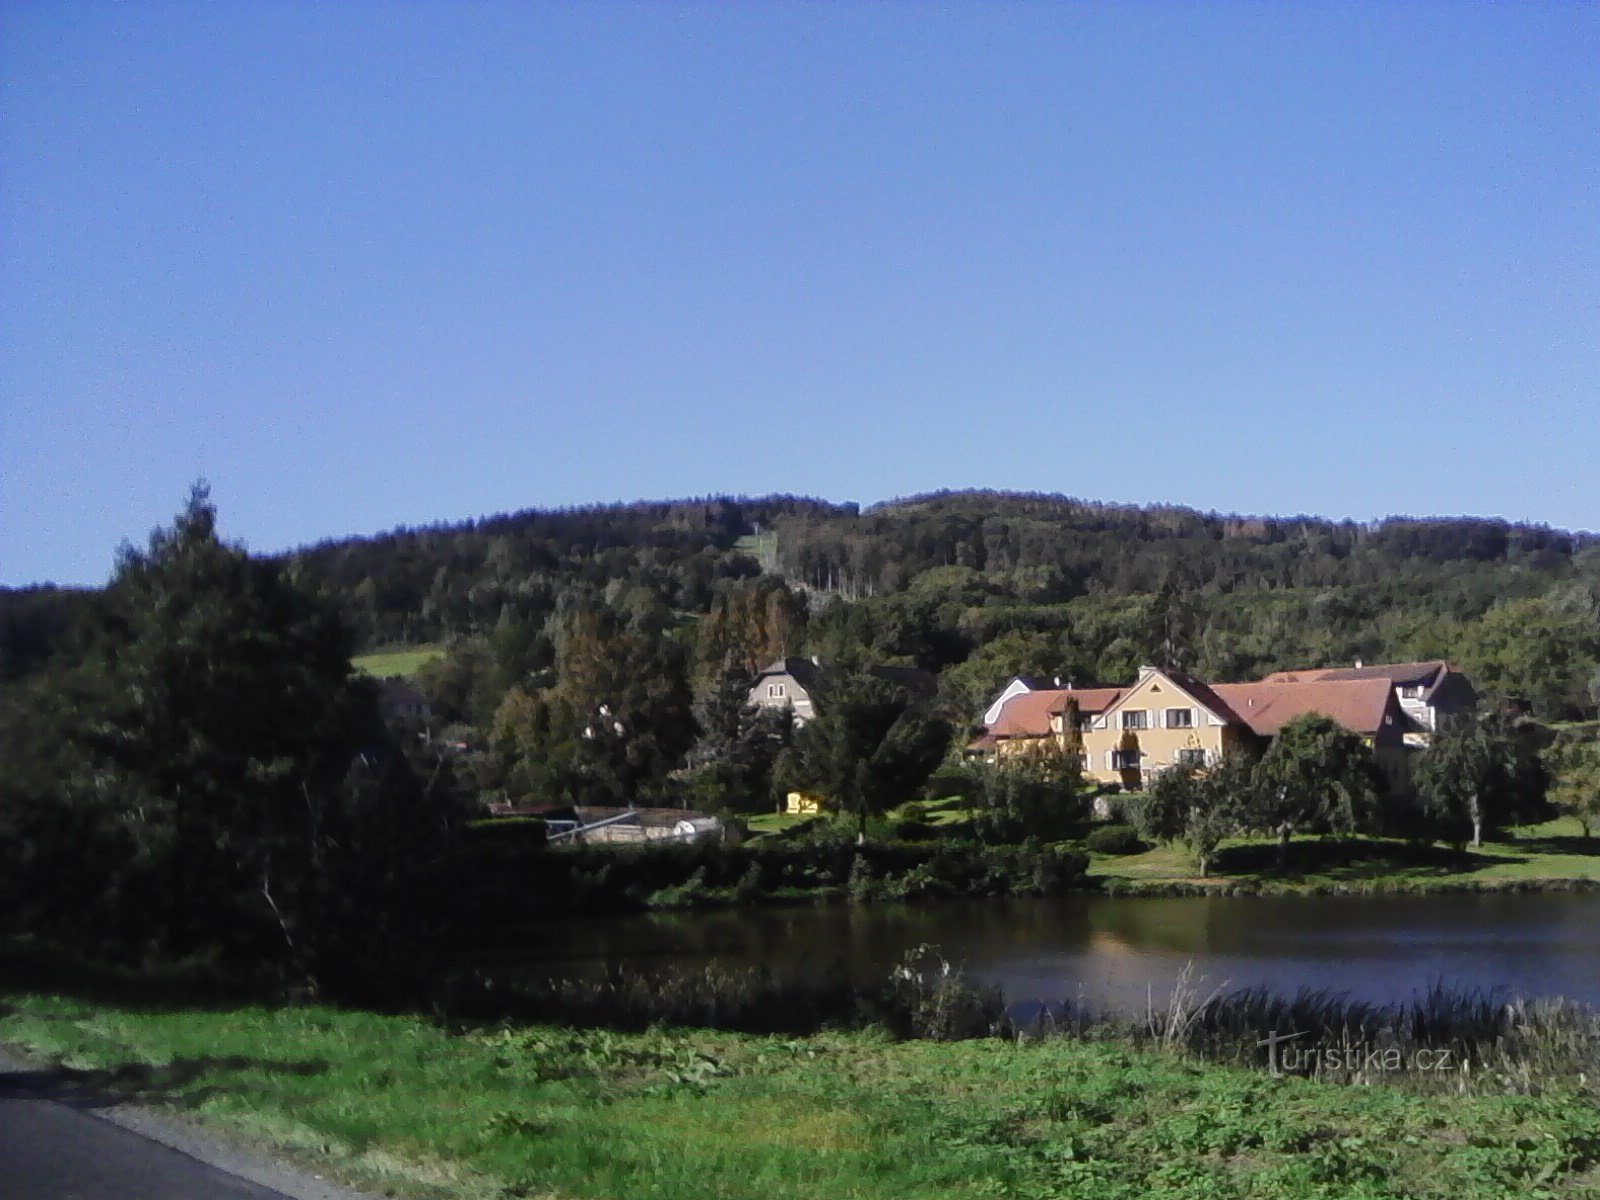 2. Vista de Lihovarský rybník em Jetřichovice até Monínec.